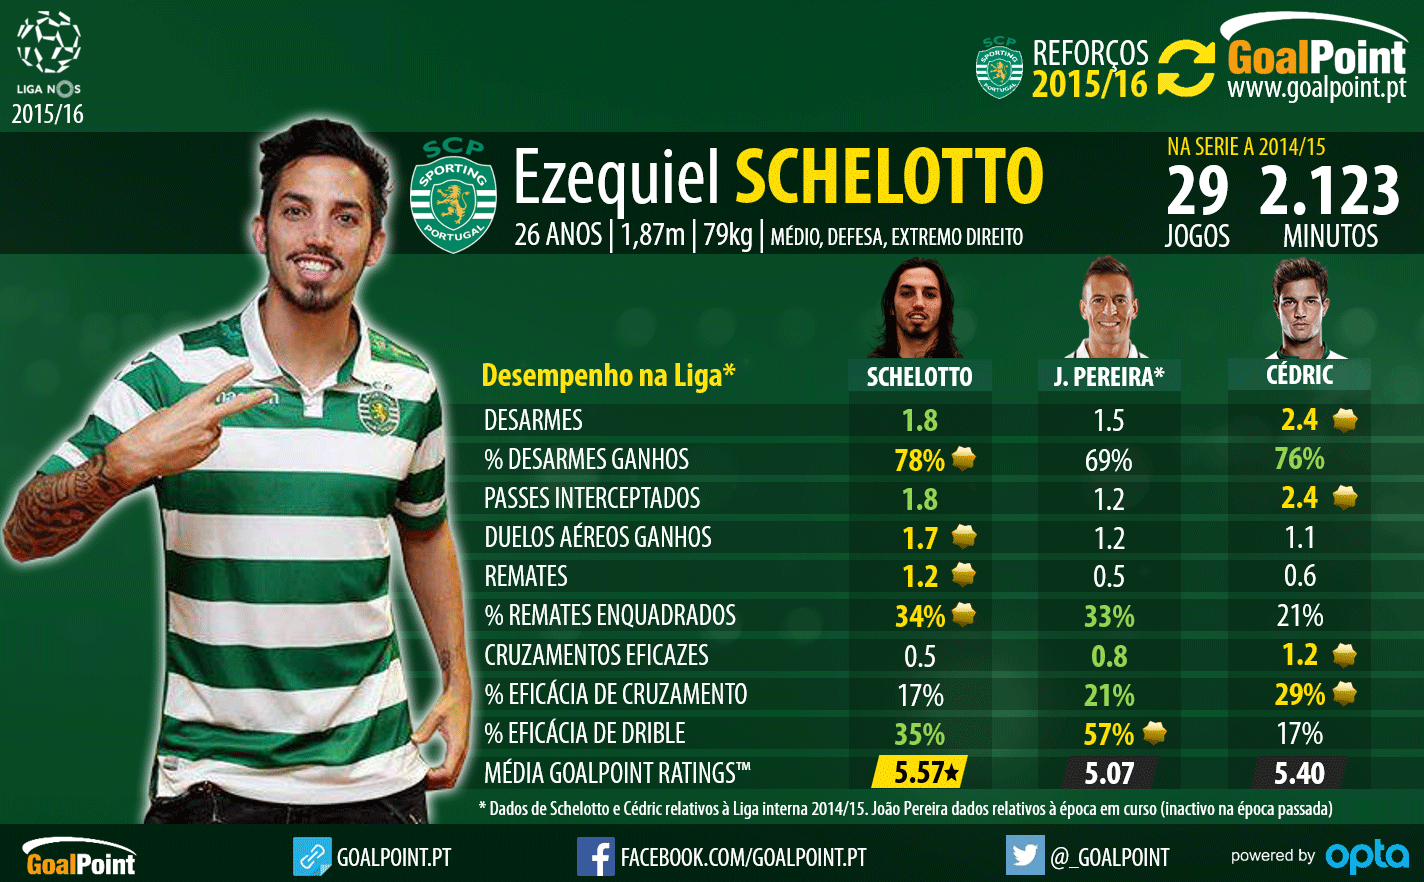 Reforços 2015/16: Ezequiel Schelotto - Sporting CP